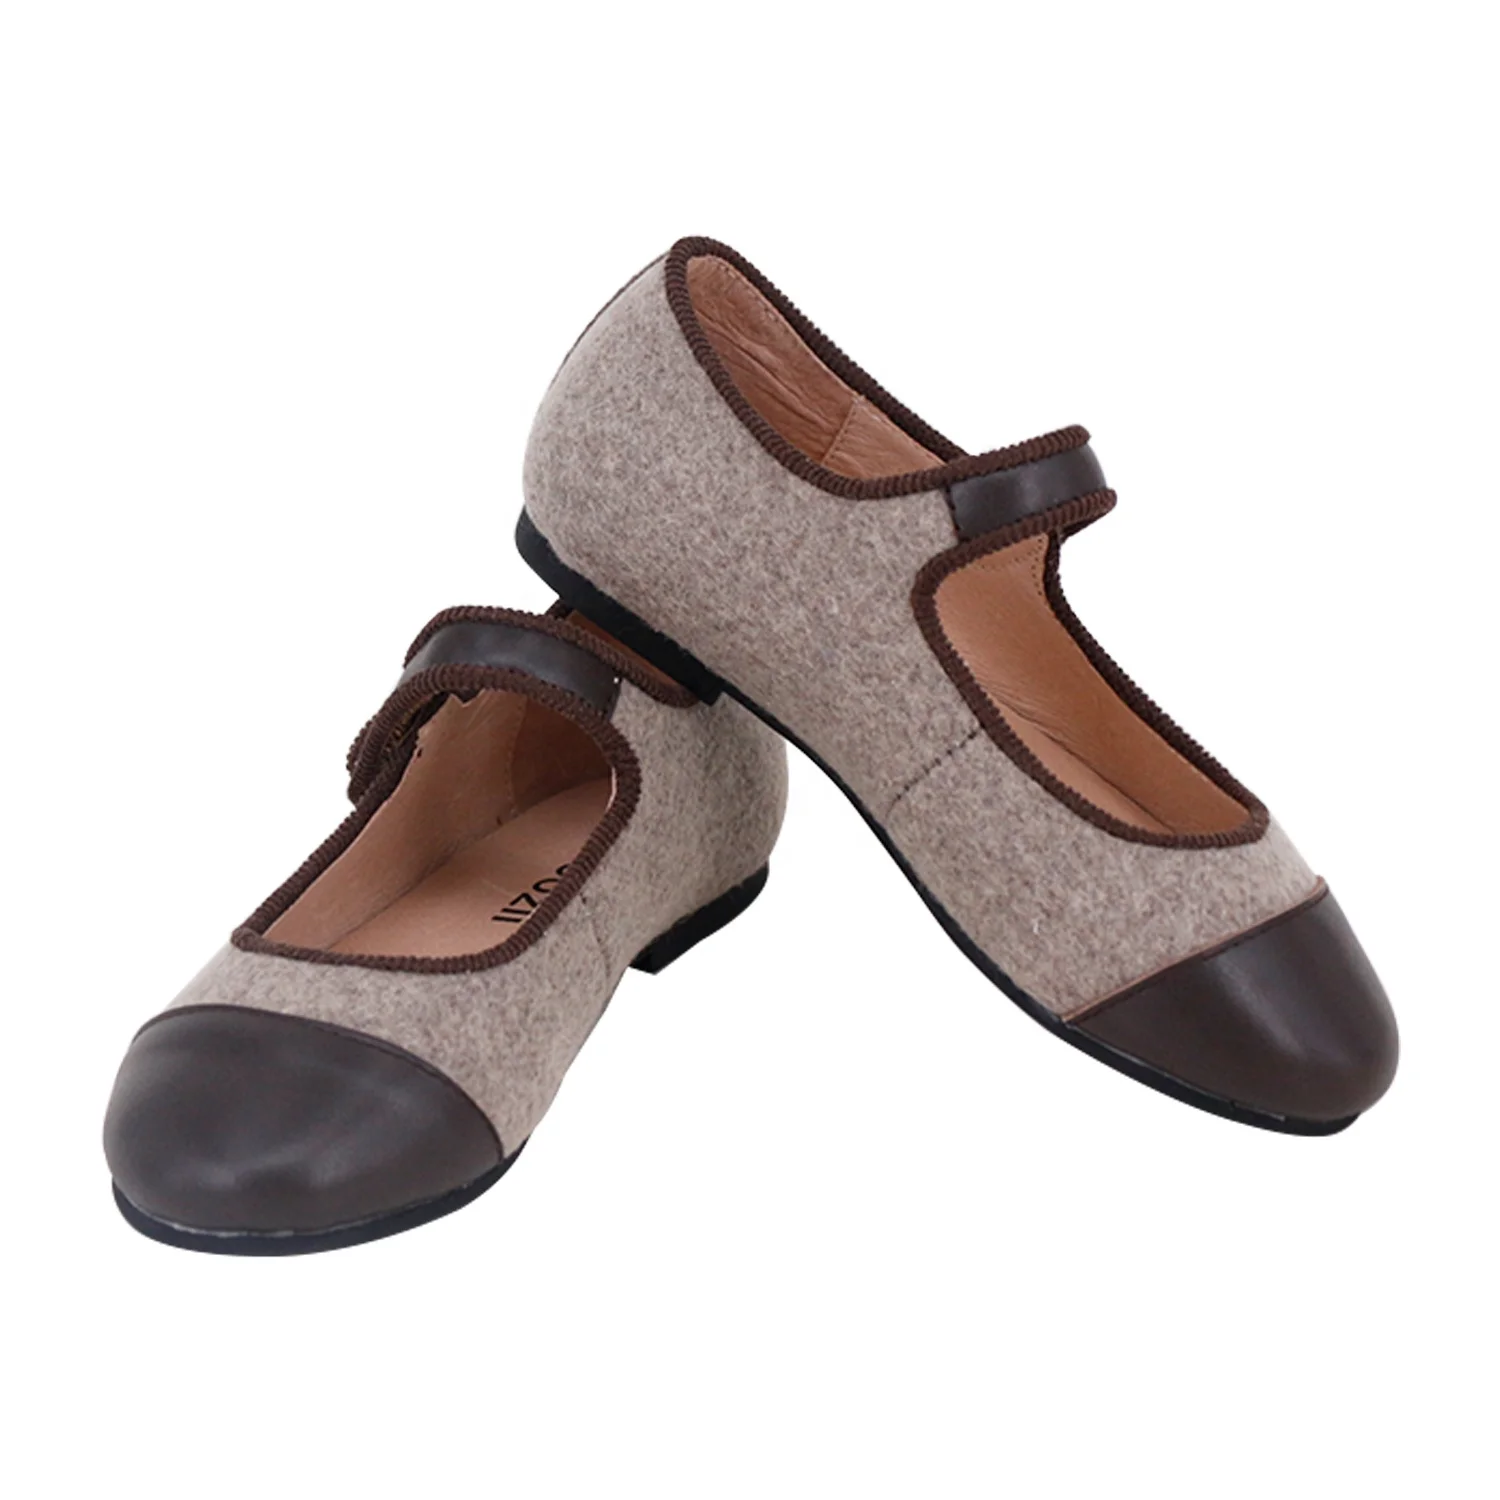 Дизайнерская детская обувь Choozii из натуральной кожи на заказ, Туфли Мэри Джейн для девочек, детская обувь под платье